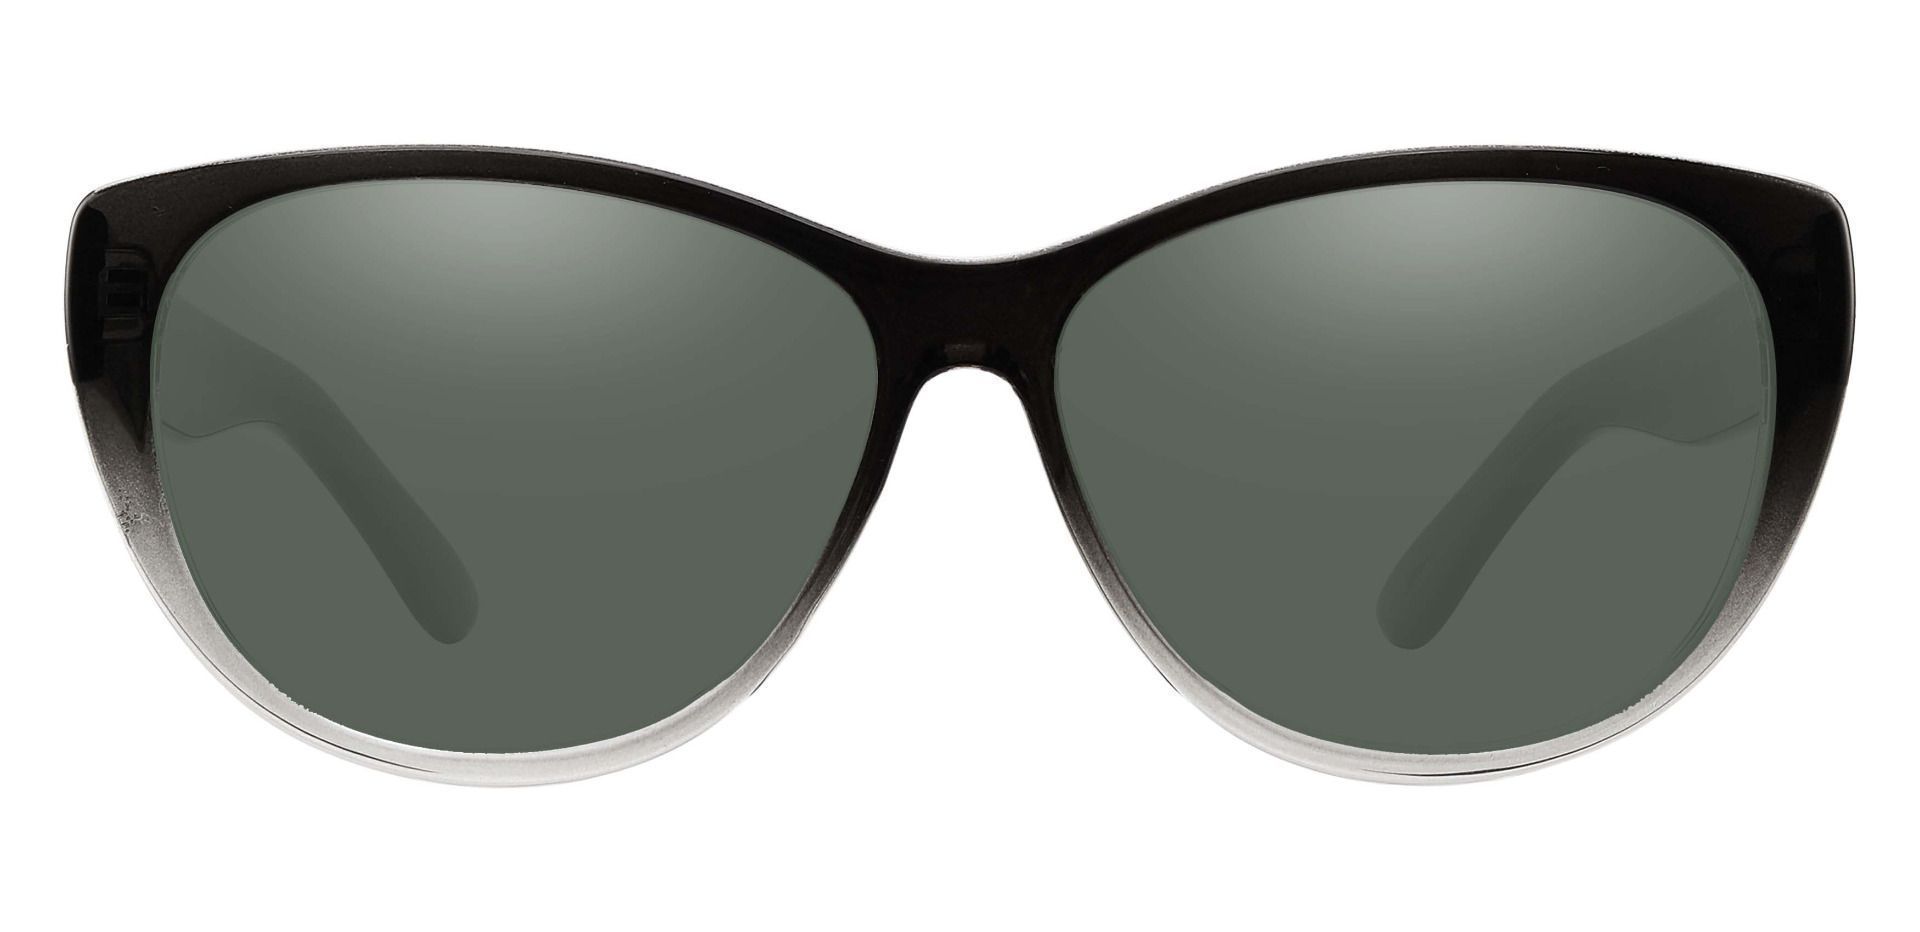 Lynn Cat-Eye Prescription Sunglasses - Gray Frame With Green Lenses ...